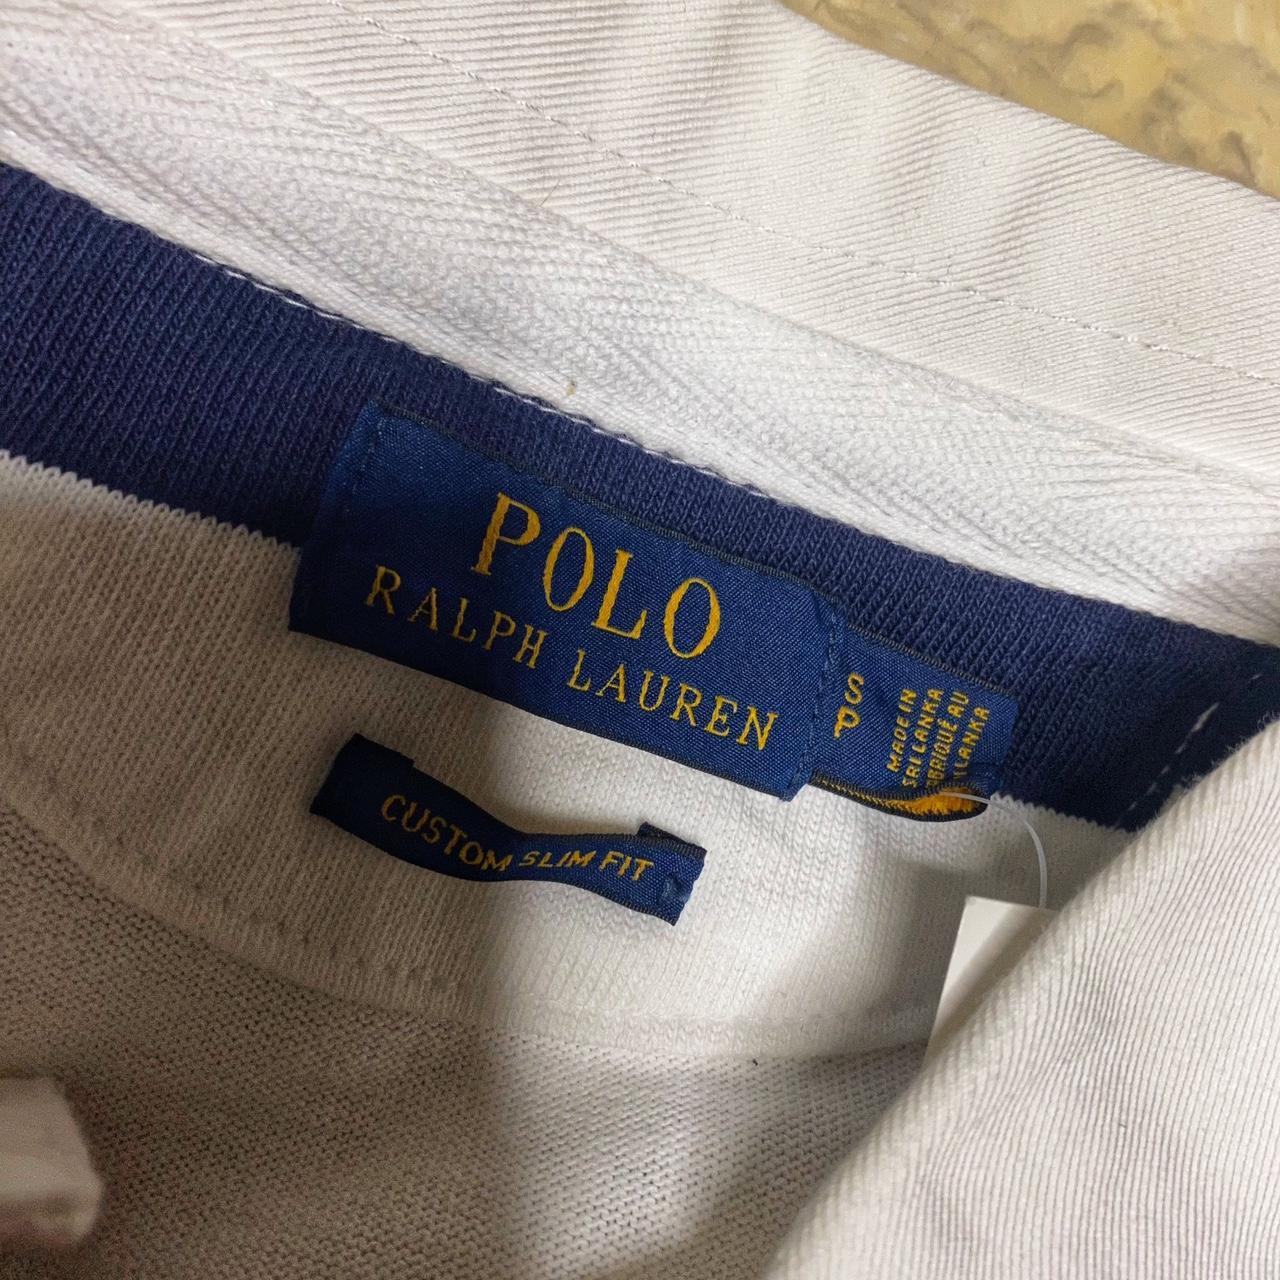 Polo Ralph Lauren long sleeve t shirt Size:... - Depop